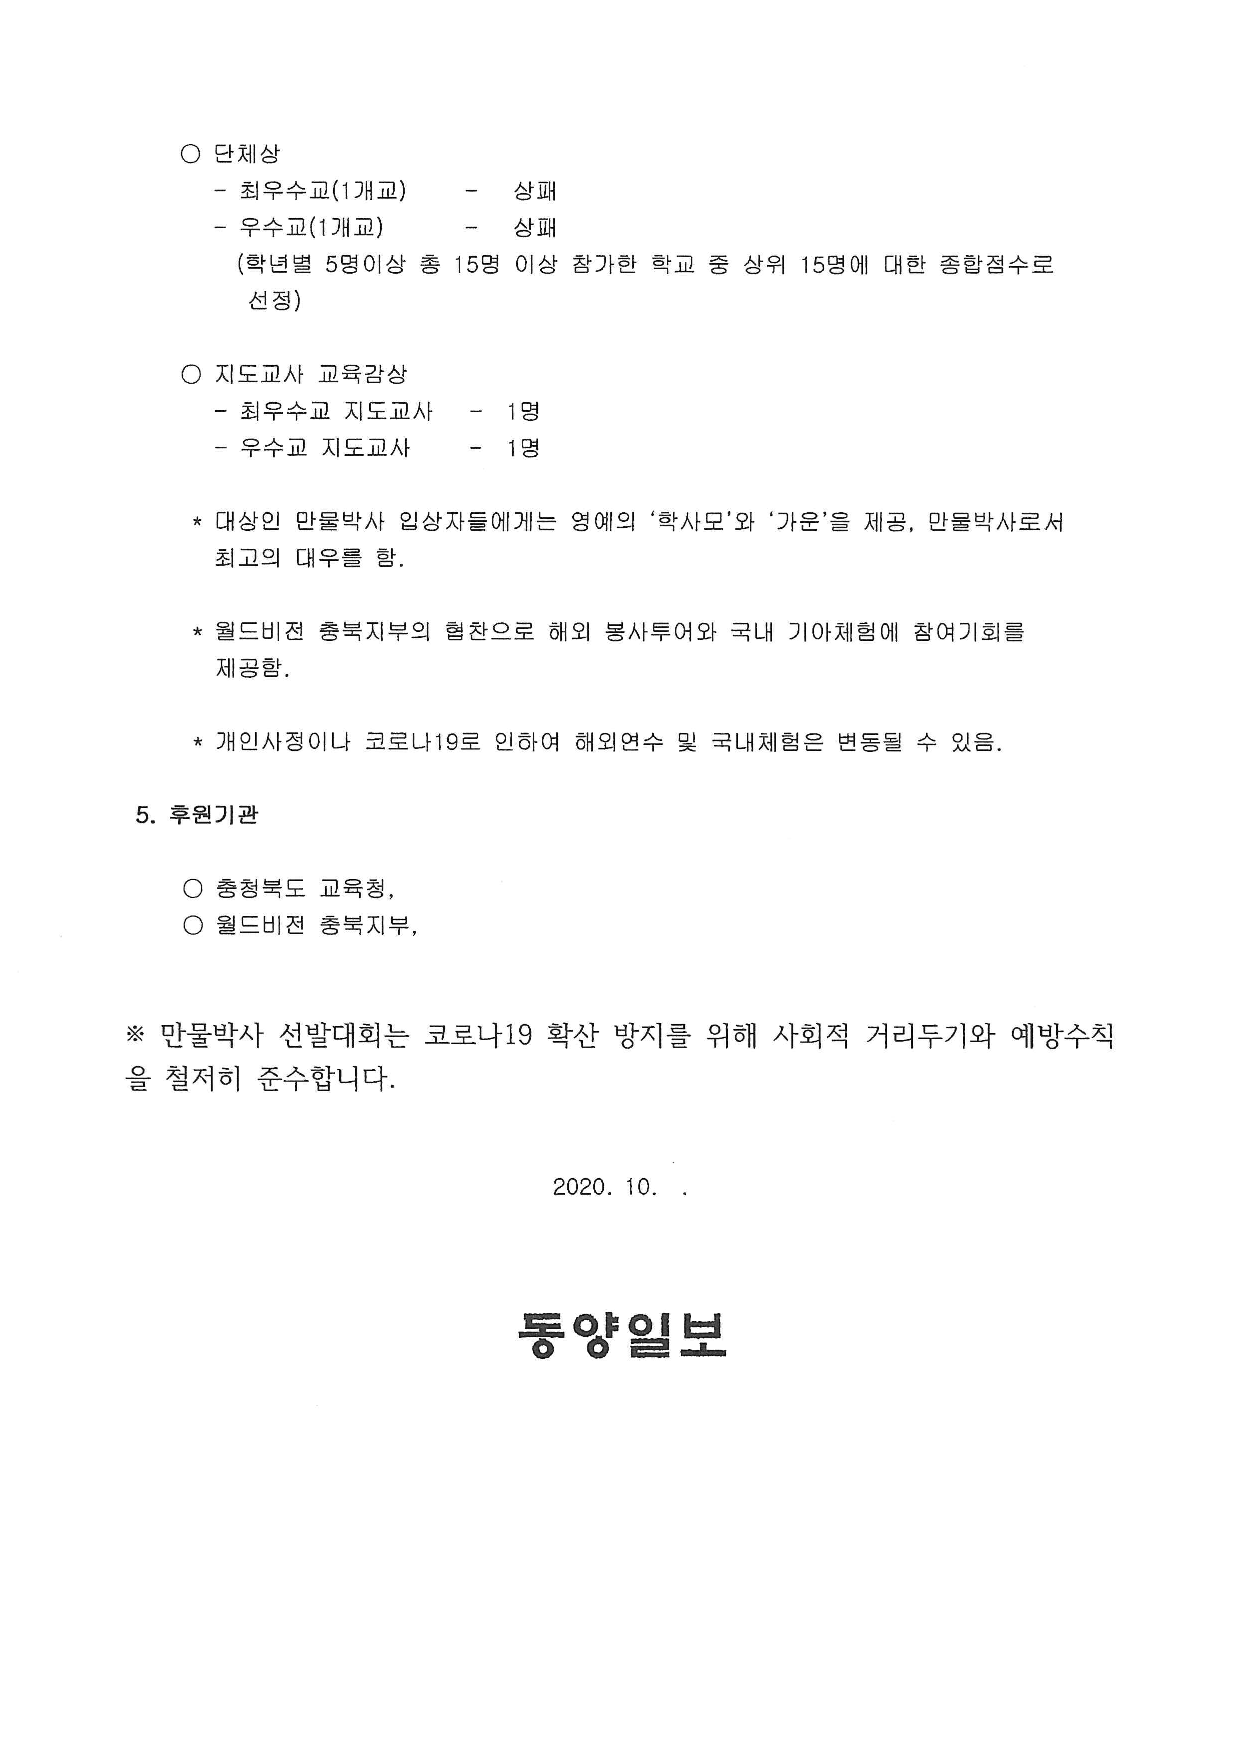 28회 동양일보 만물박사 선발대회' 참가안내_5